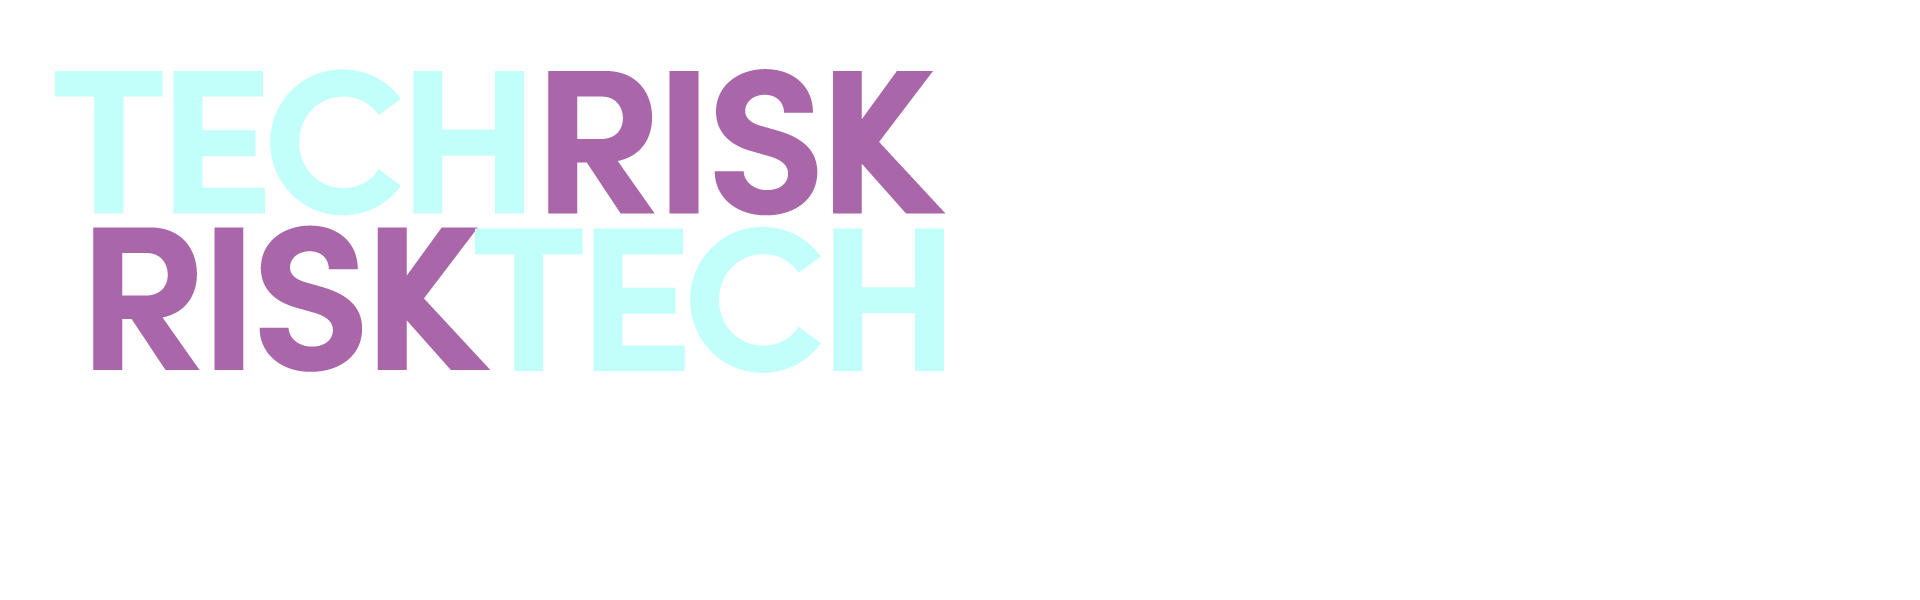 Risk Tech / Tech Risk